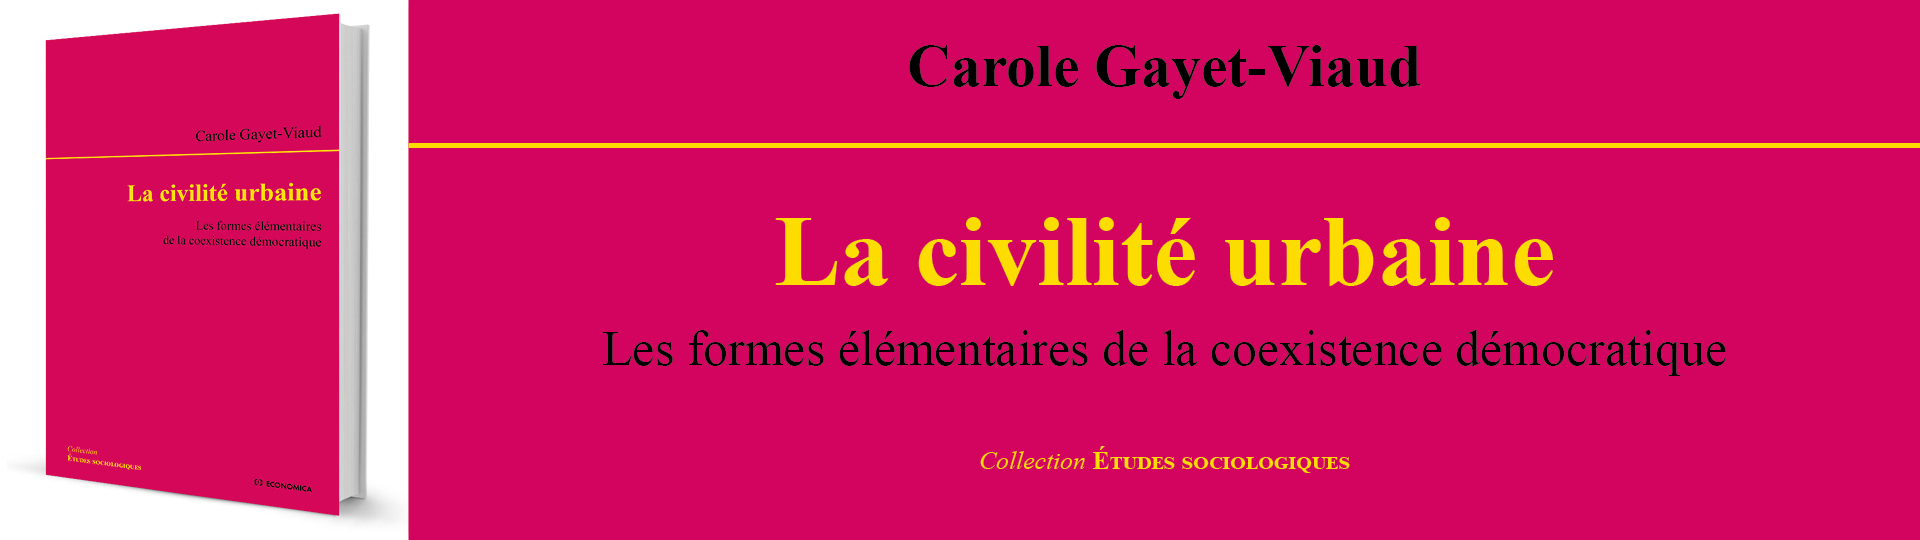 La civilité urbaine - Carole Gayet-Viaud